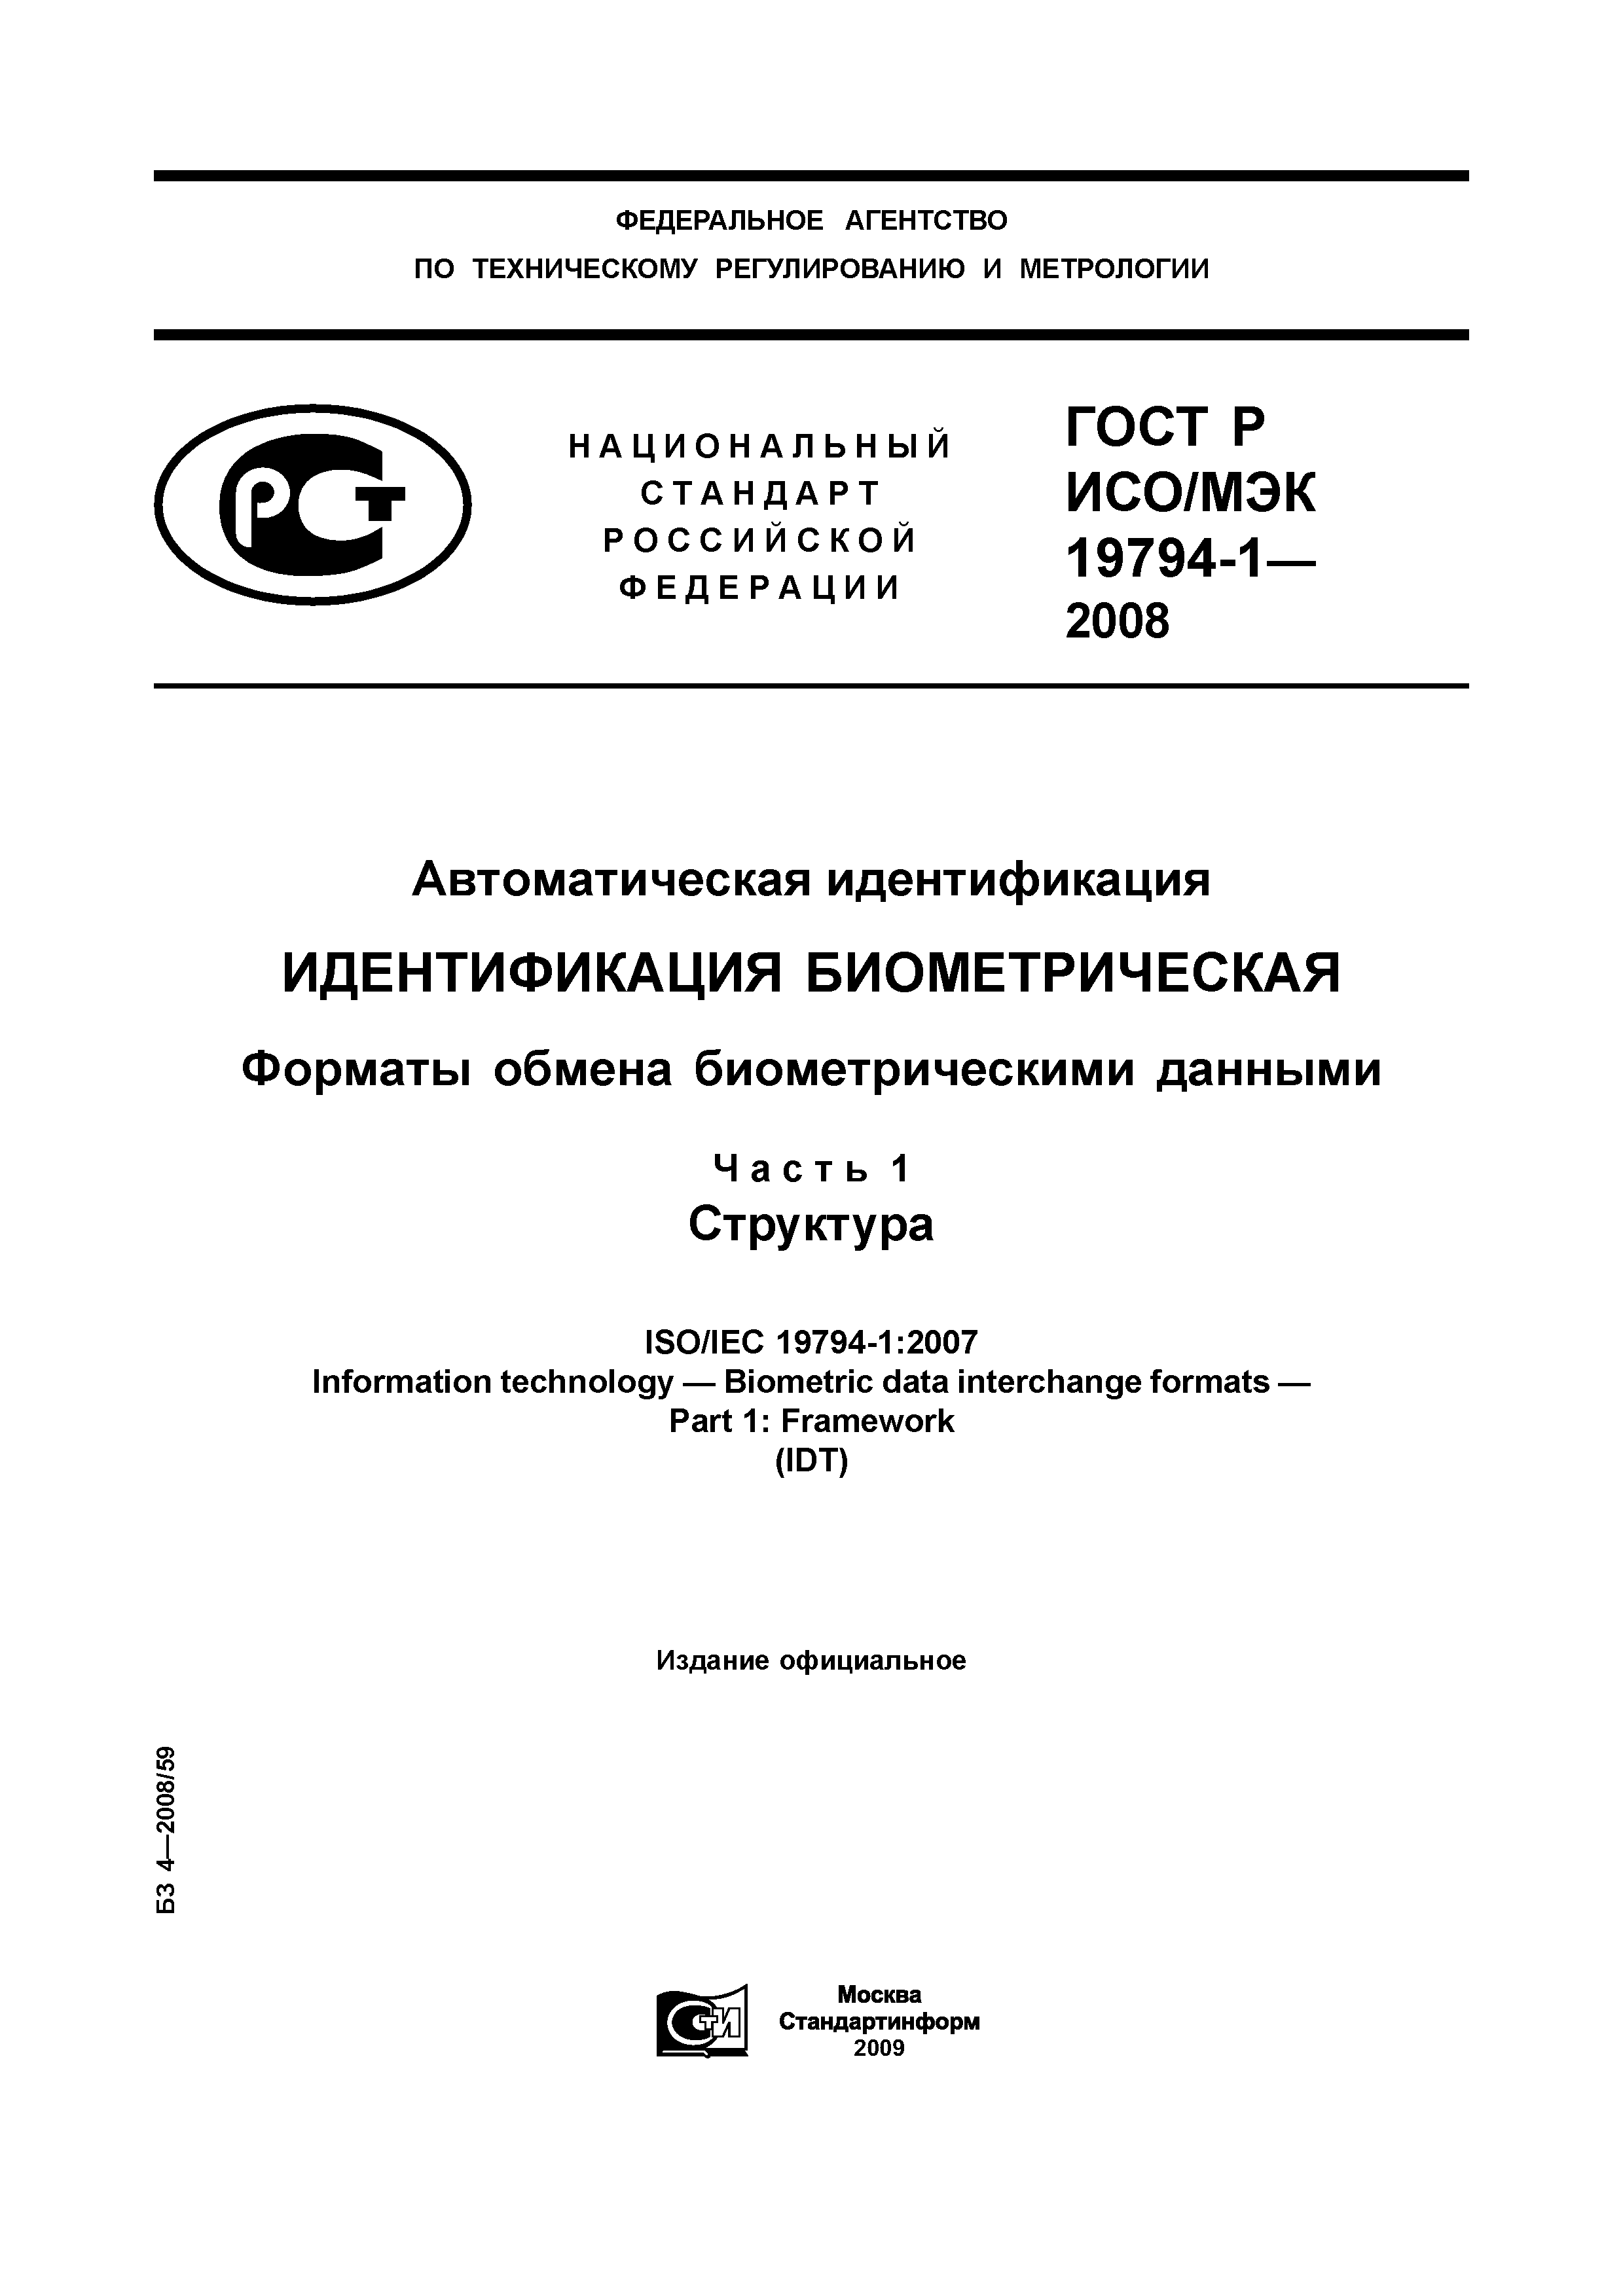 ГОСТ Р ИСО/МЭК 19794-1-2008